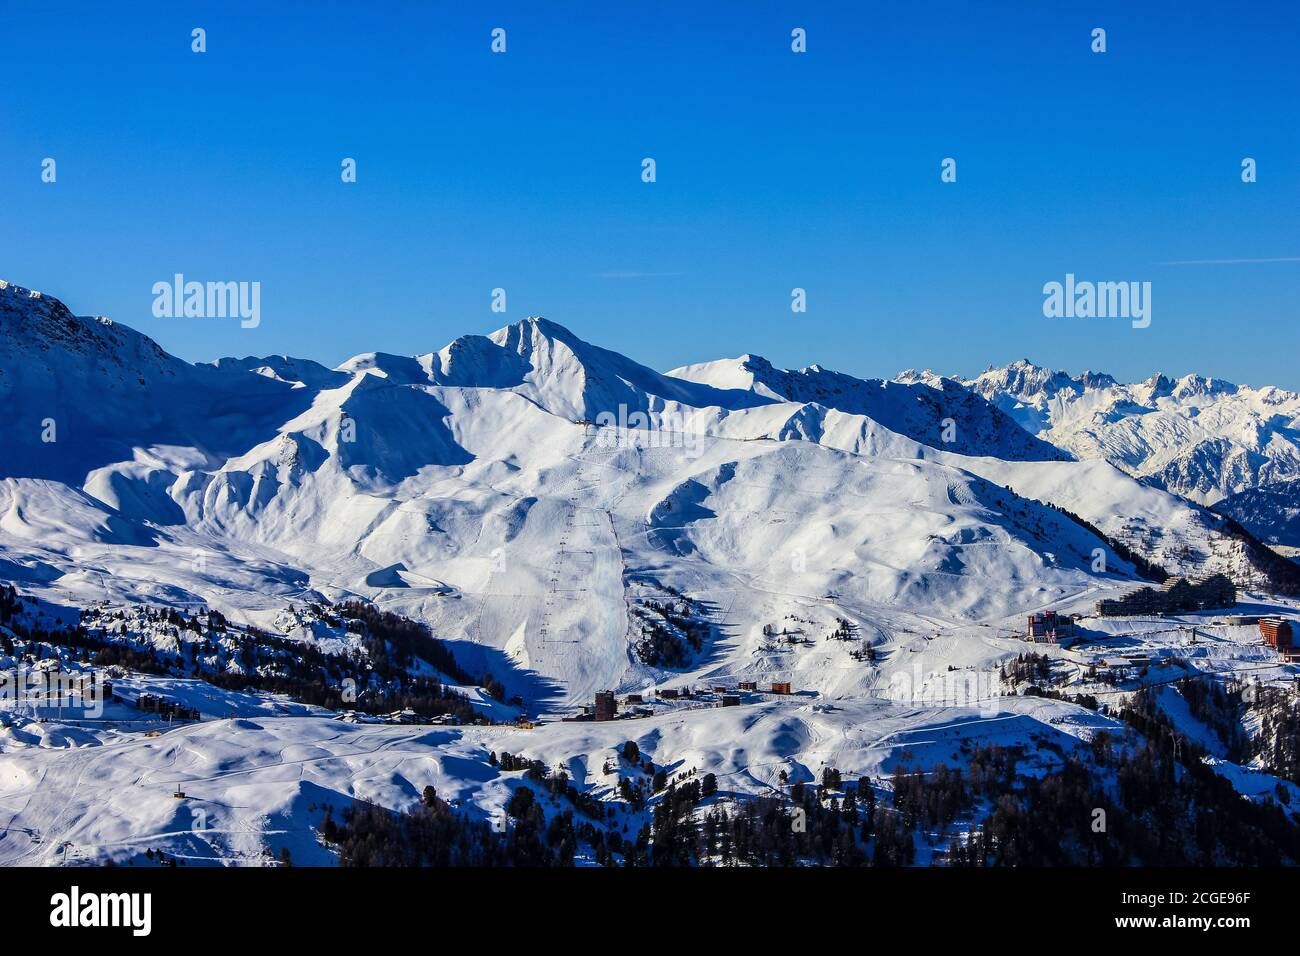 Vue sur le domaine skiable de la Plagne, France Banque D'Images